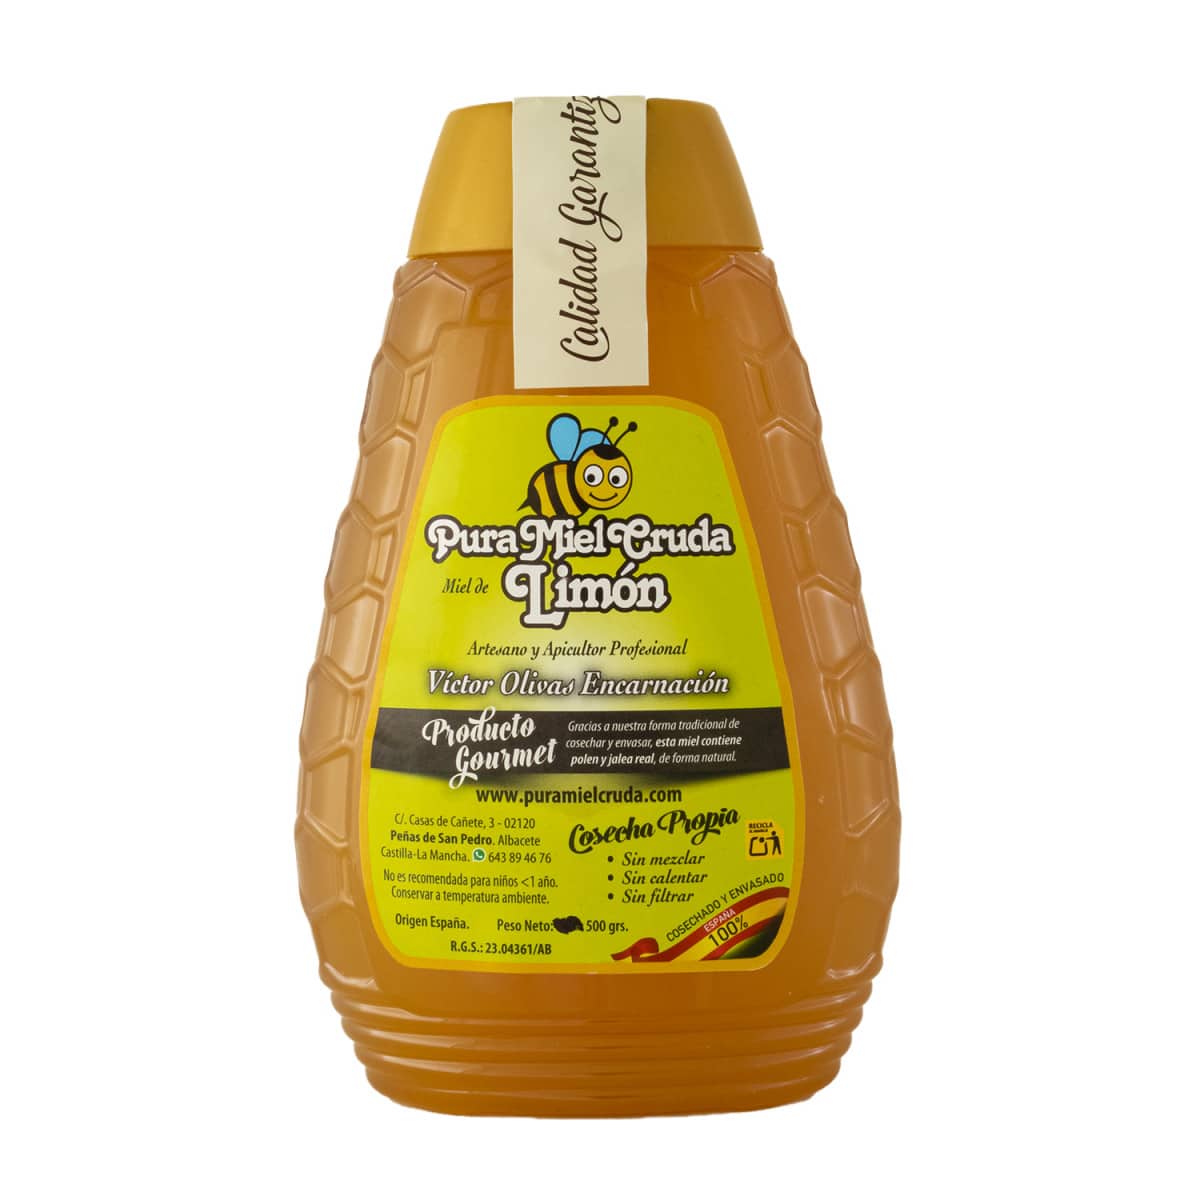 Pura miel cruda Limon500g